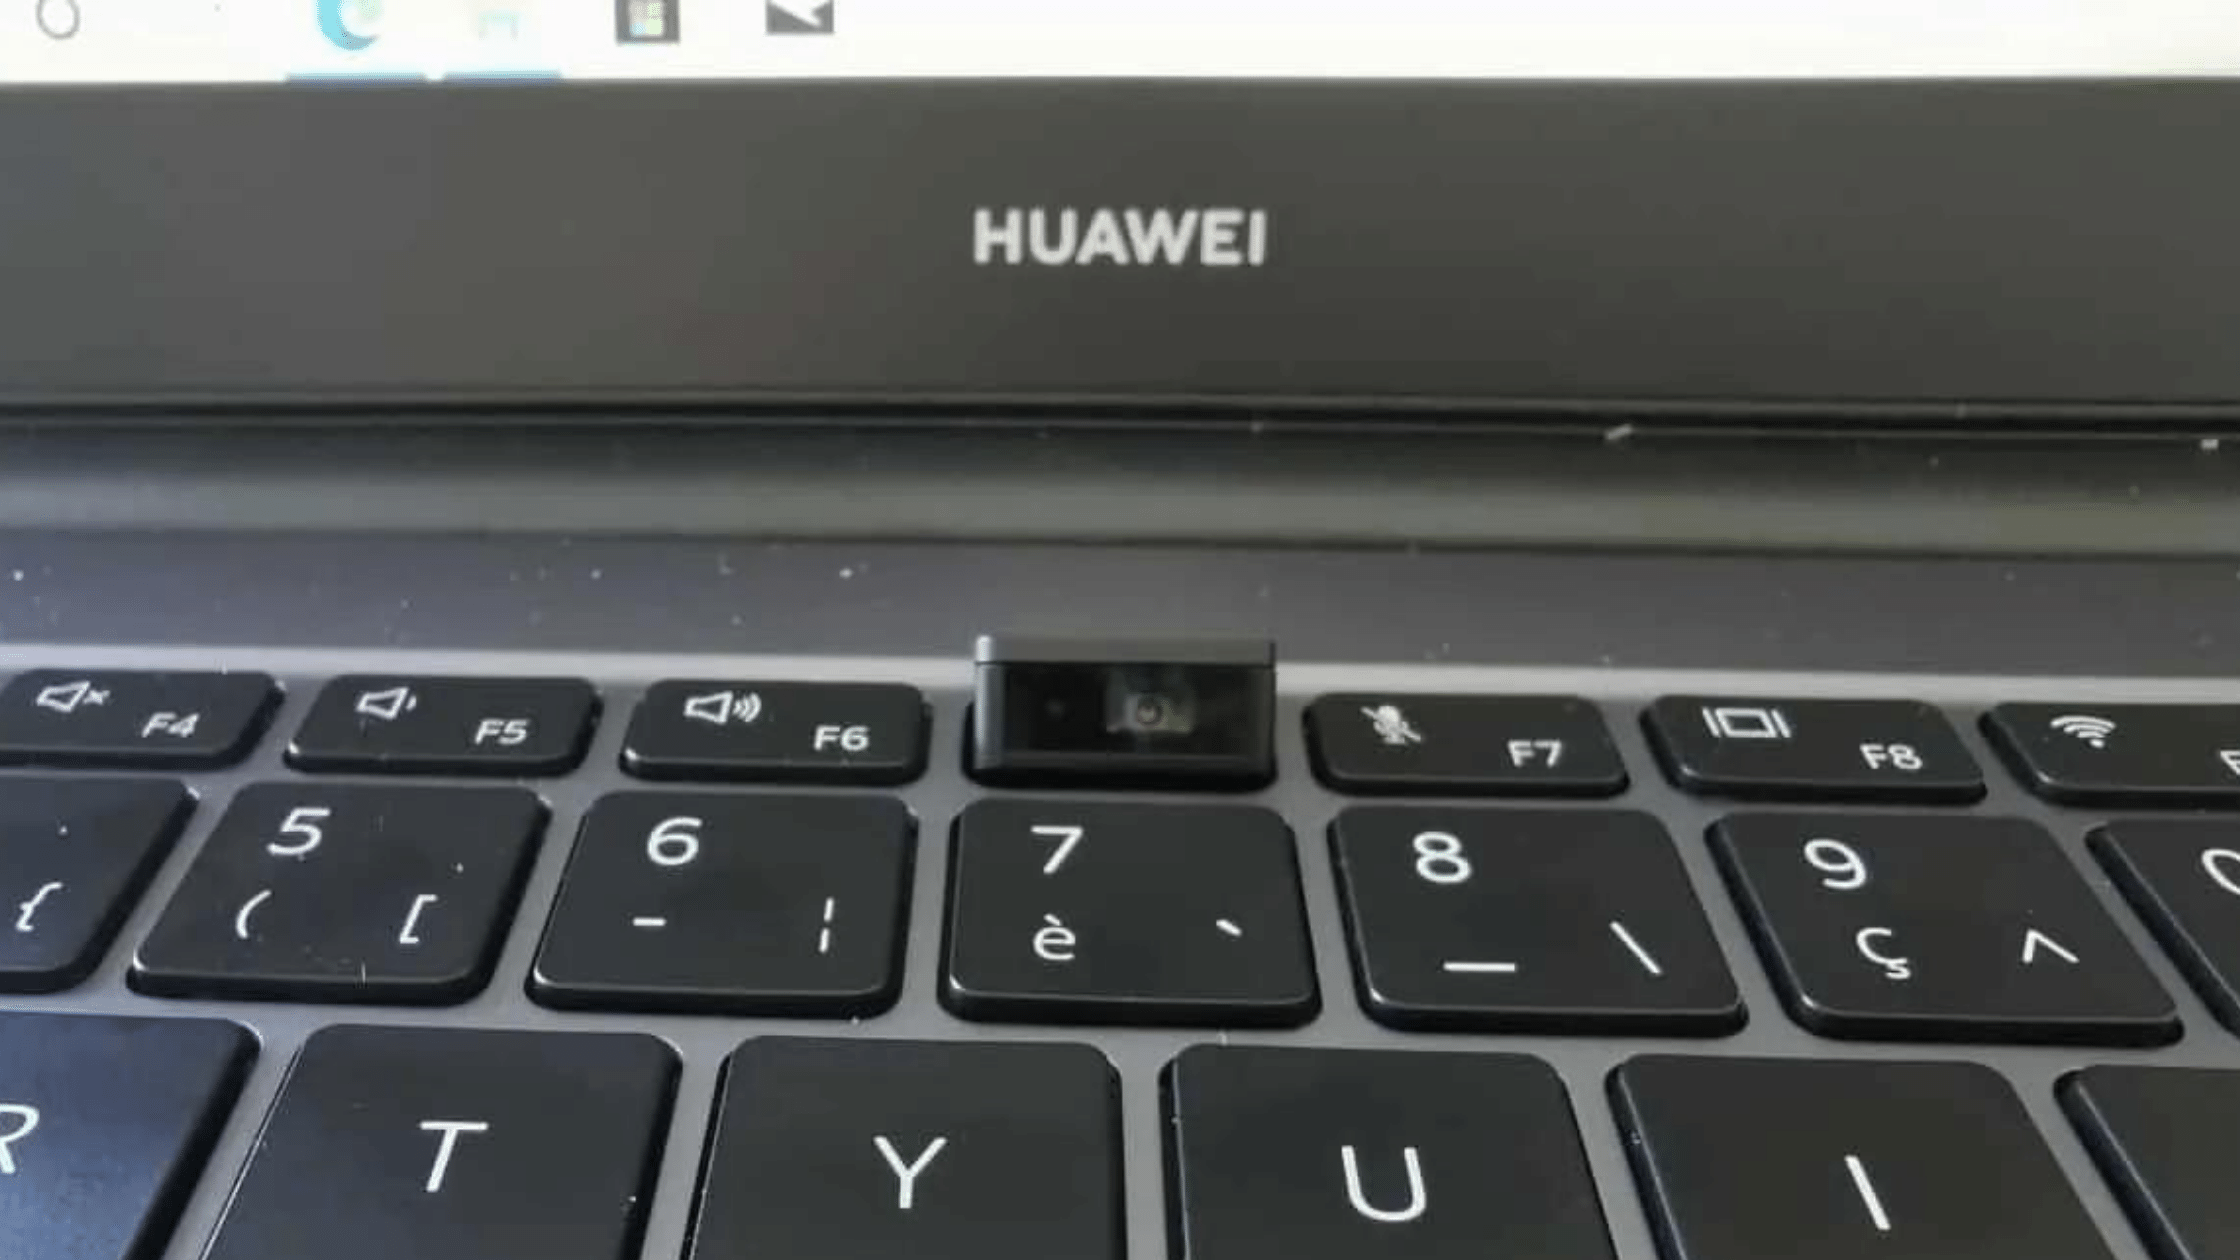 Factory Reset HUAWEI Laptop